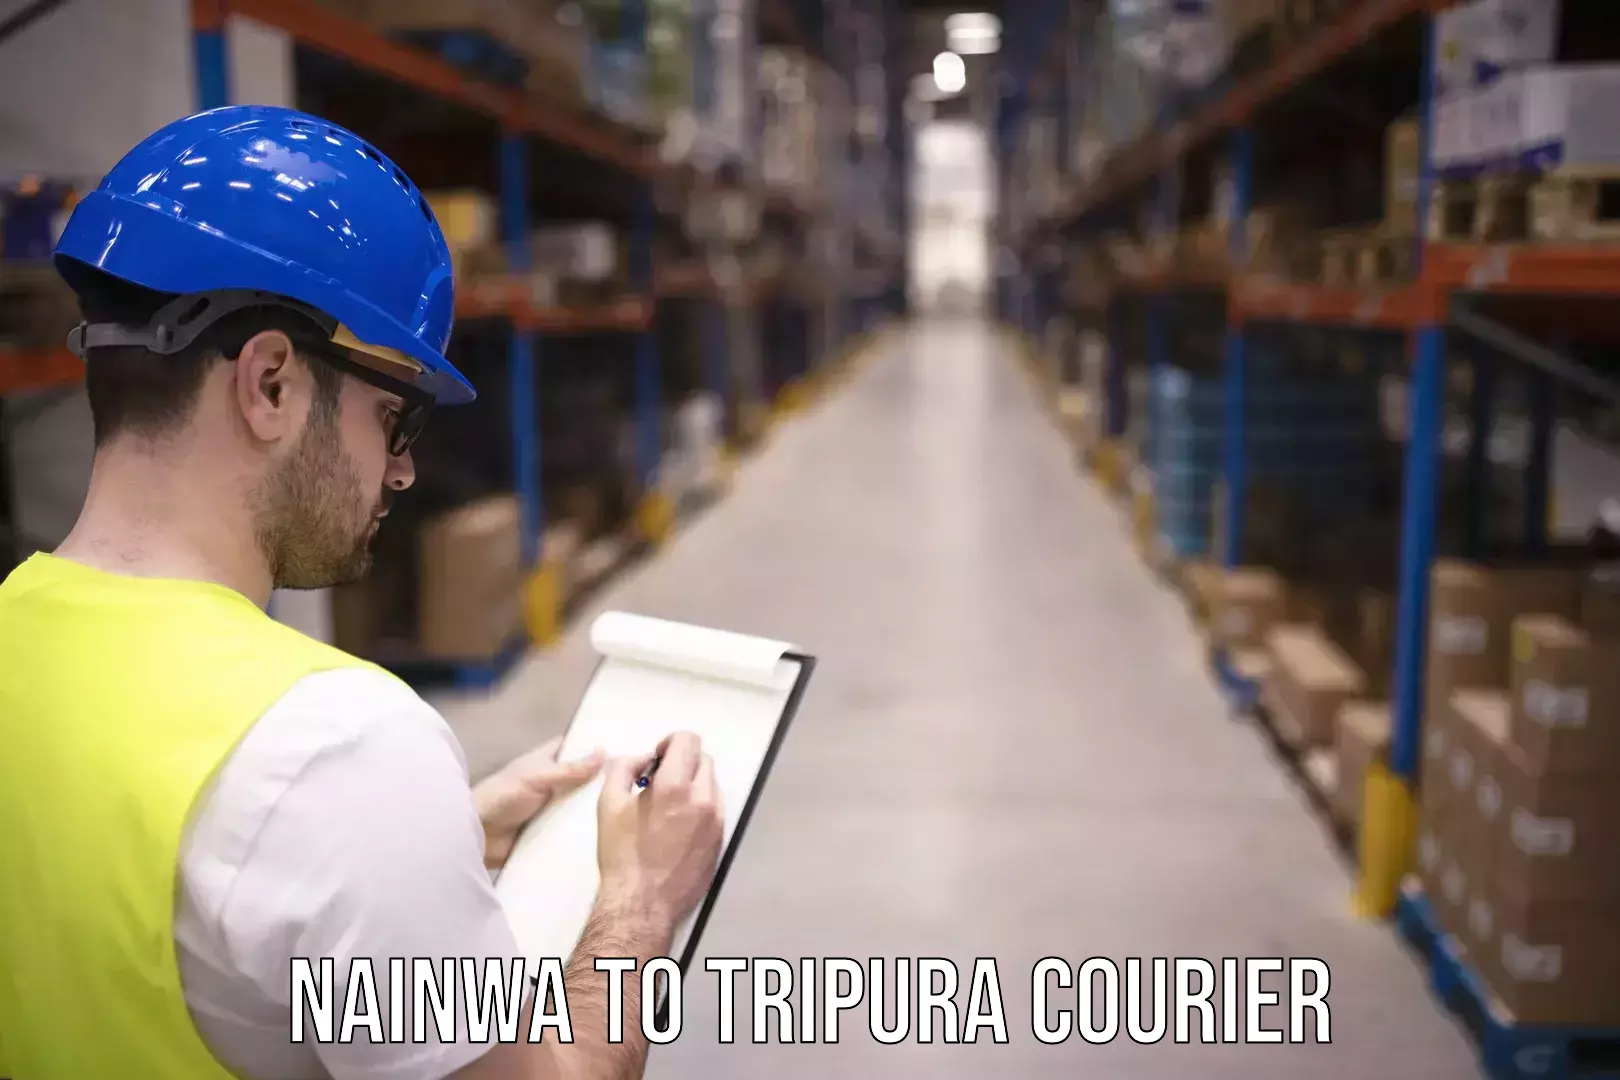 Door-to-door freight service Nainwa to Tripura